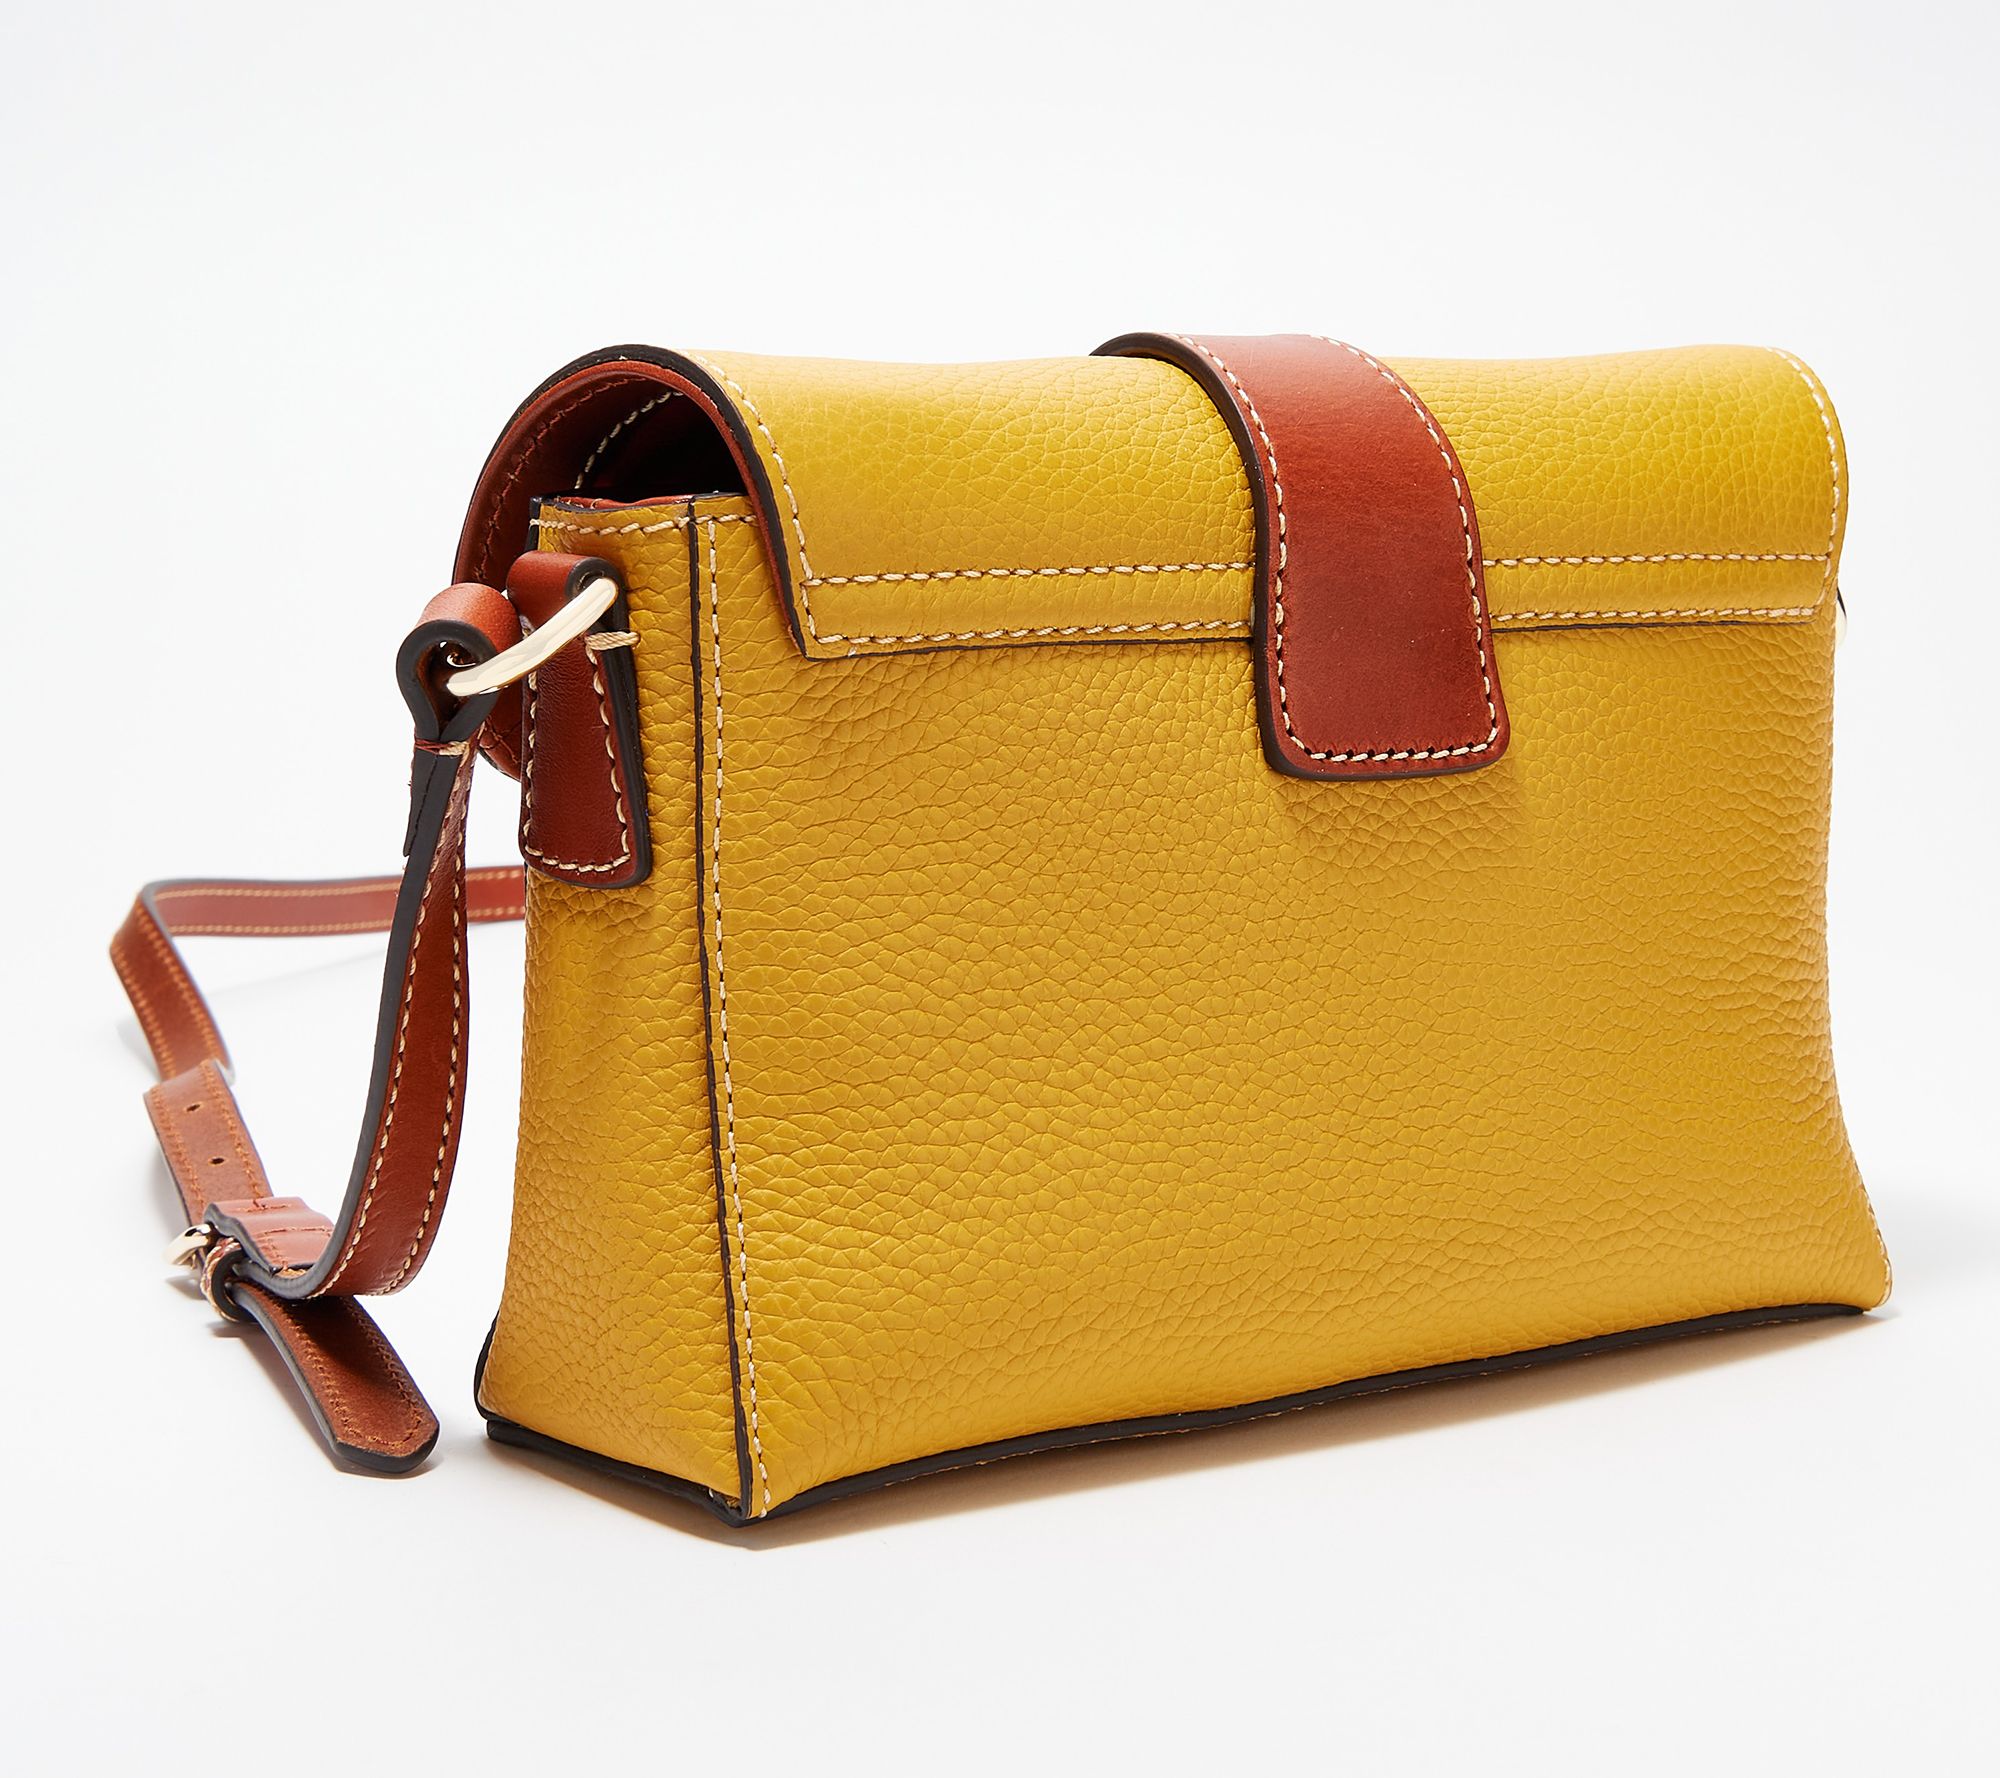 Dooney & Bourke Handbag, Saffiano Kyra Crossbody - Marine: Handbags